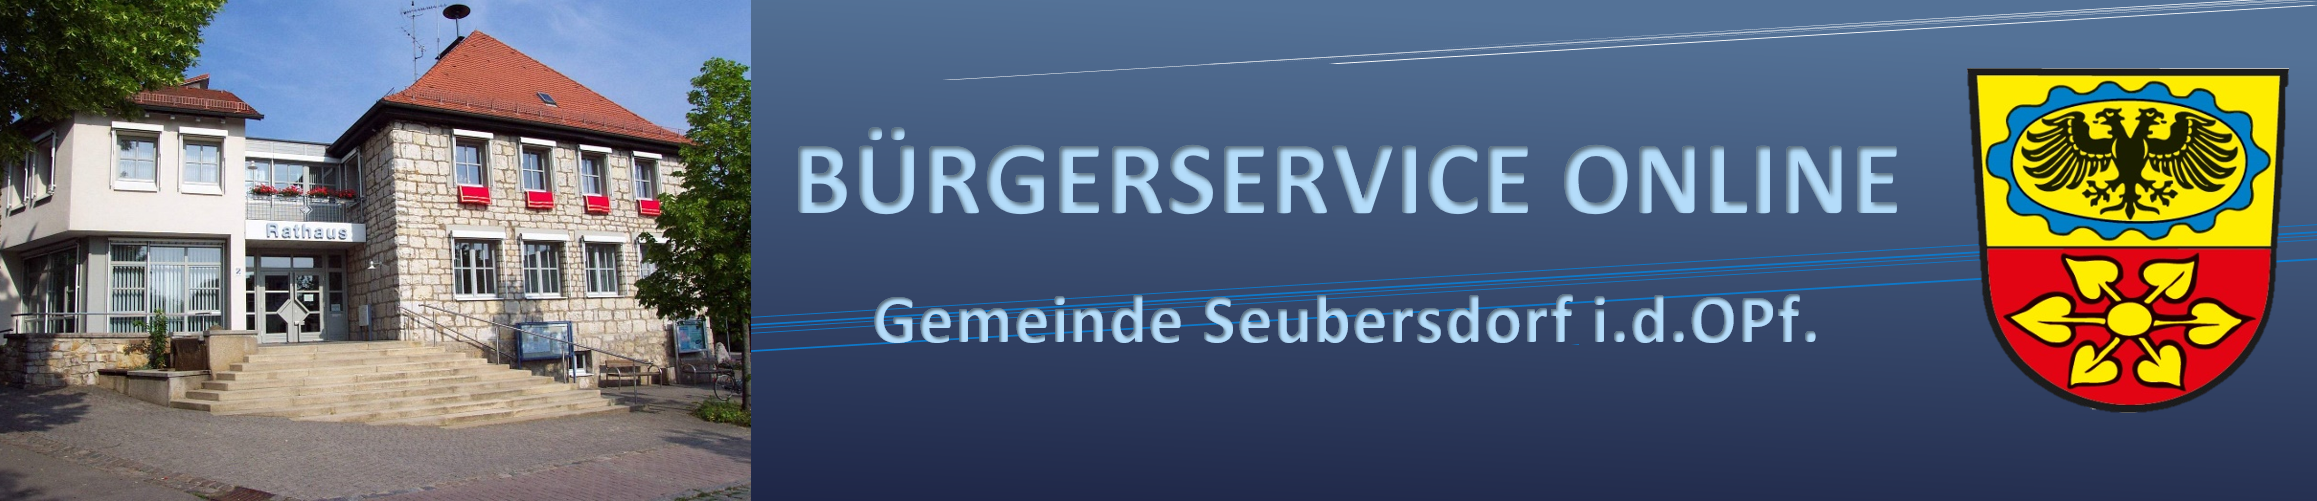 Gemeinde Seubersdorf